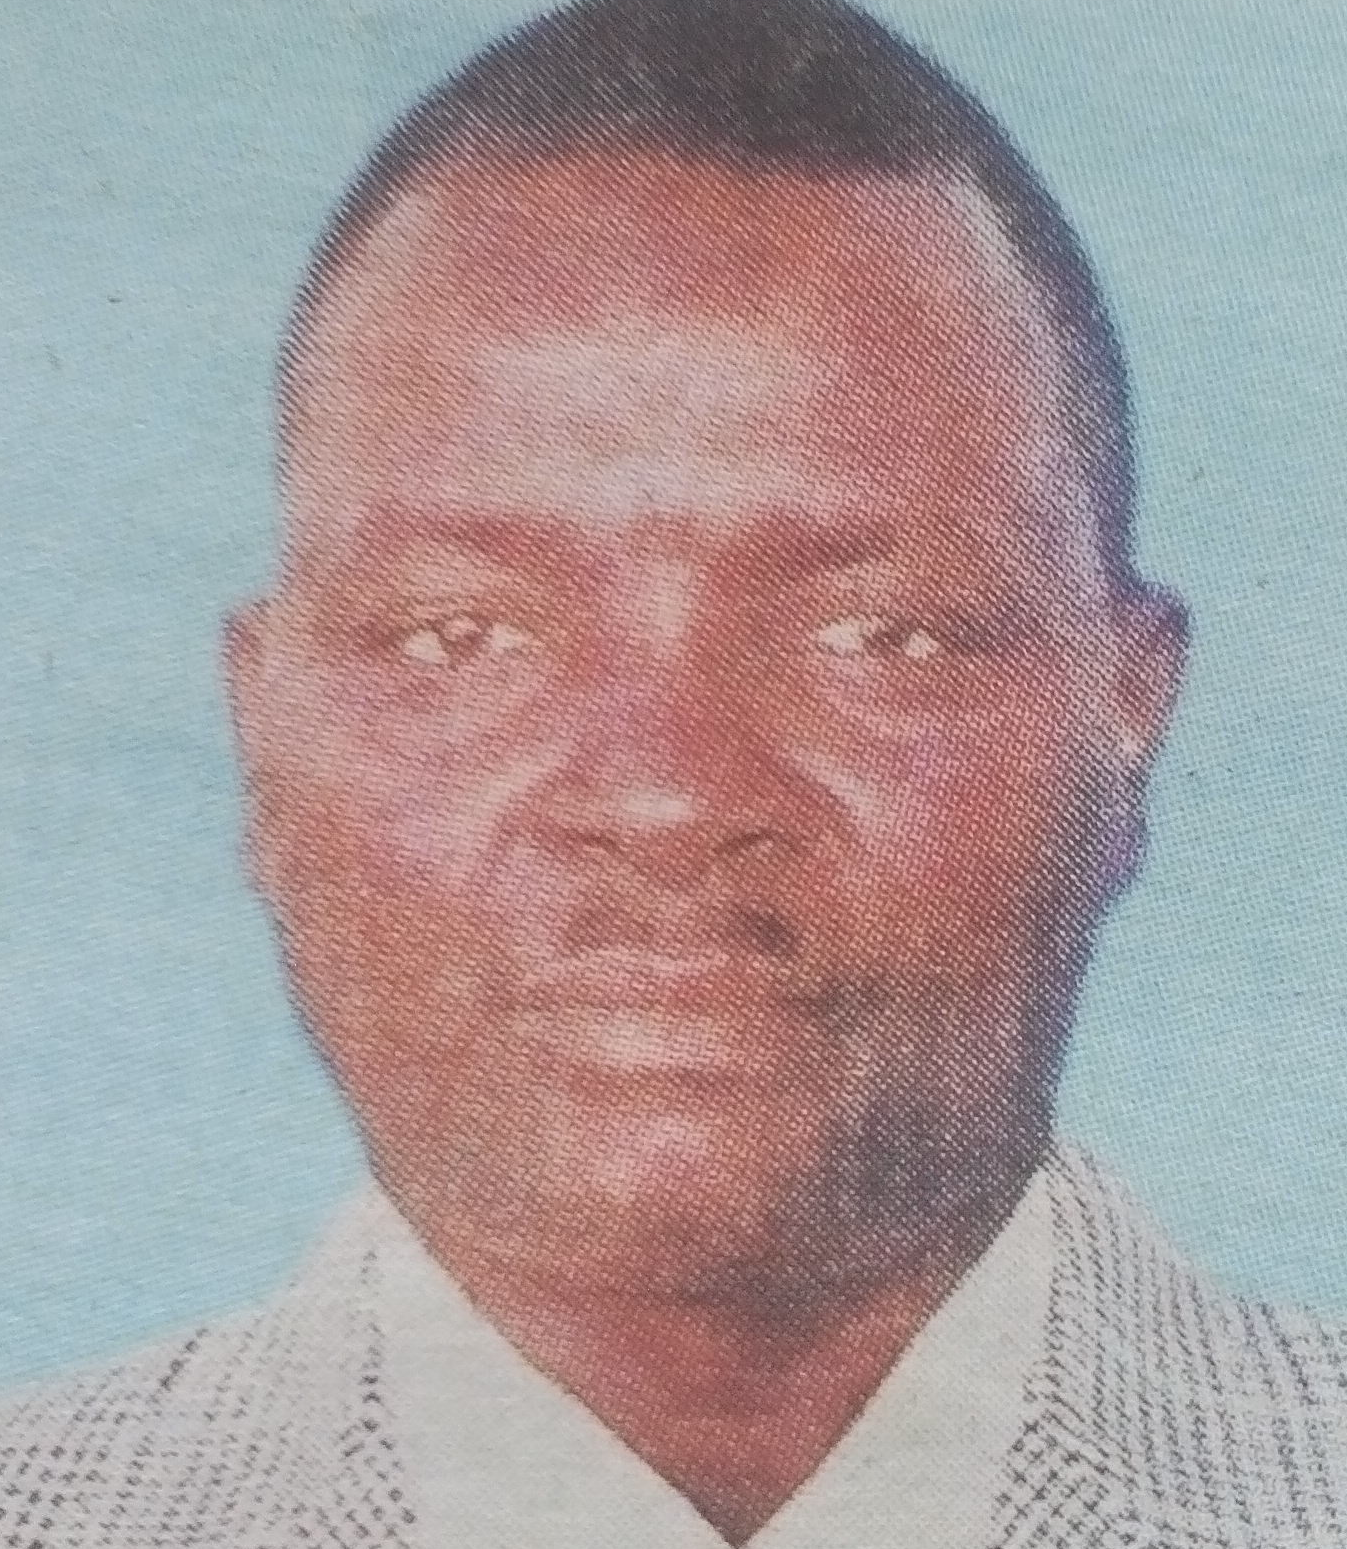 Obituary Image of Francis Ndege Gachoki